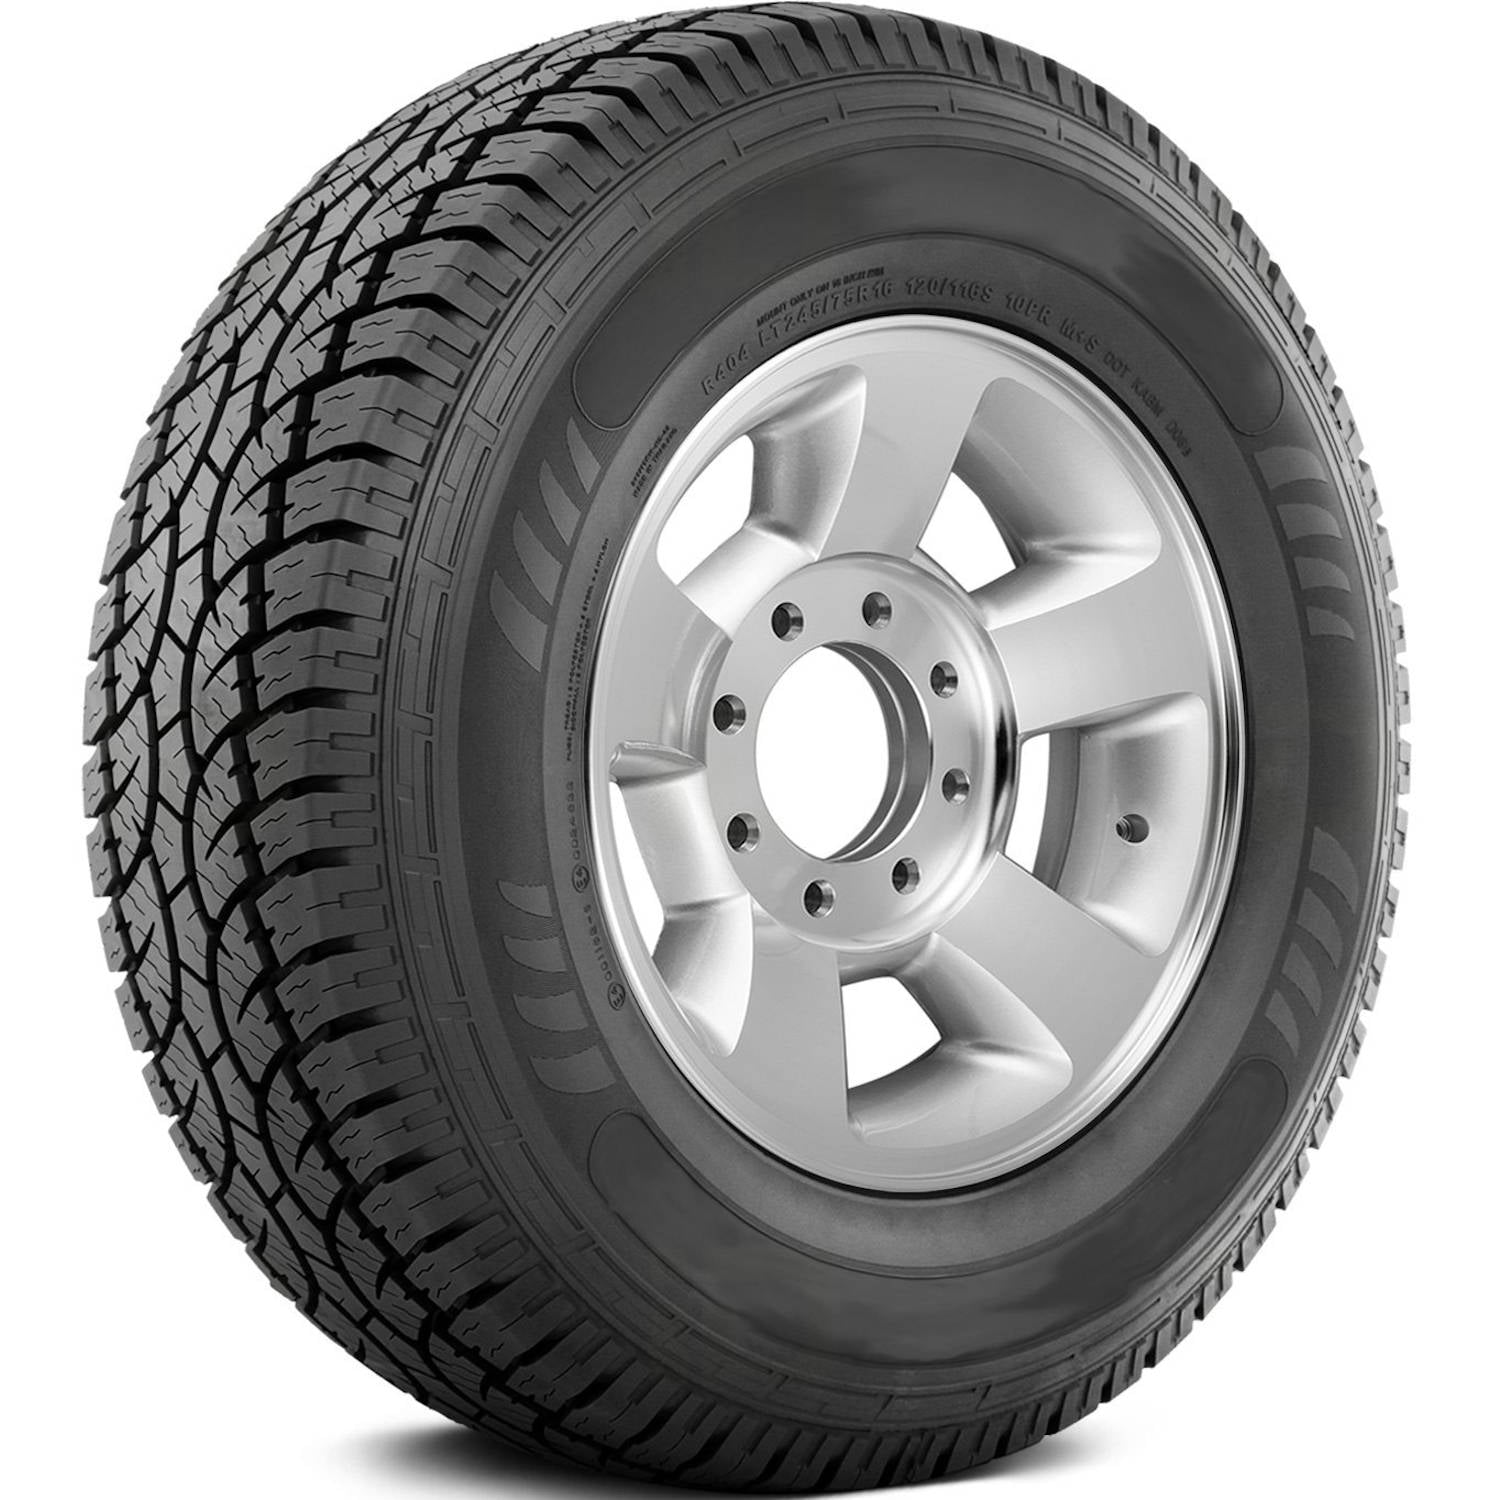 AMERICUS RUGGED ALL TERRAIN 265/50R20 (30.5X10.4R 20) Tires